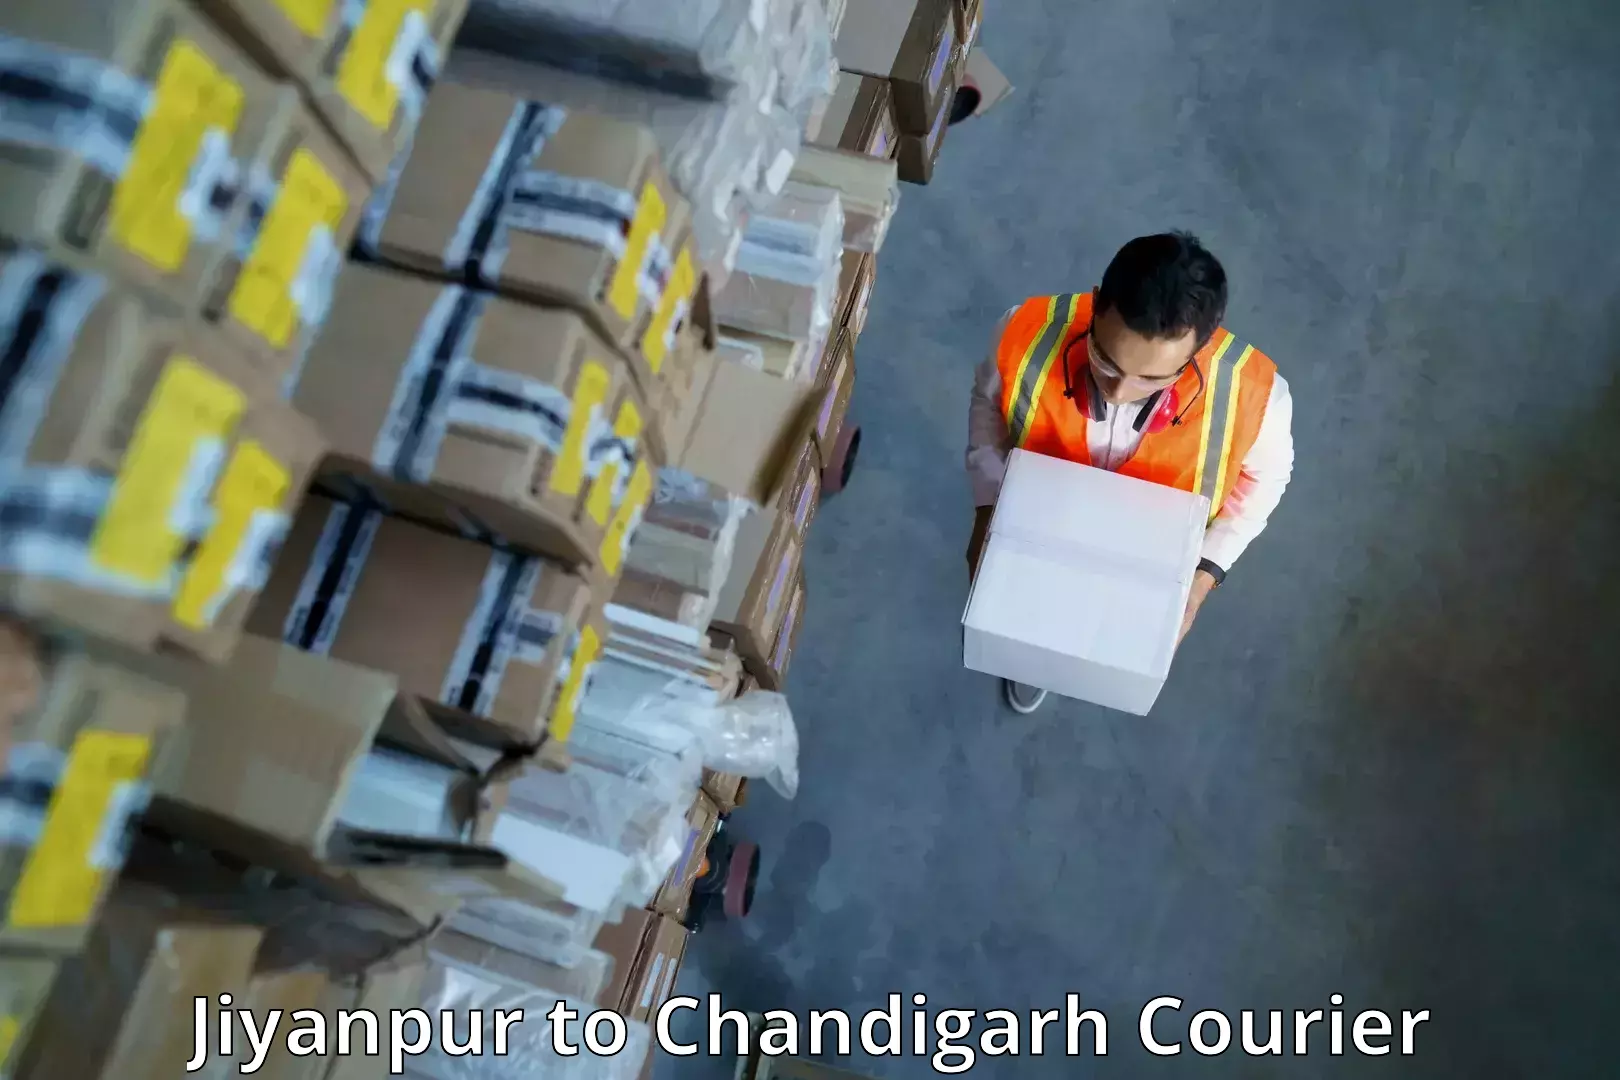 Express logistics service Jiyanpur to Panjab University Chandigarh